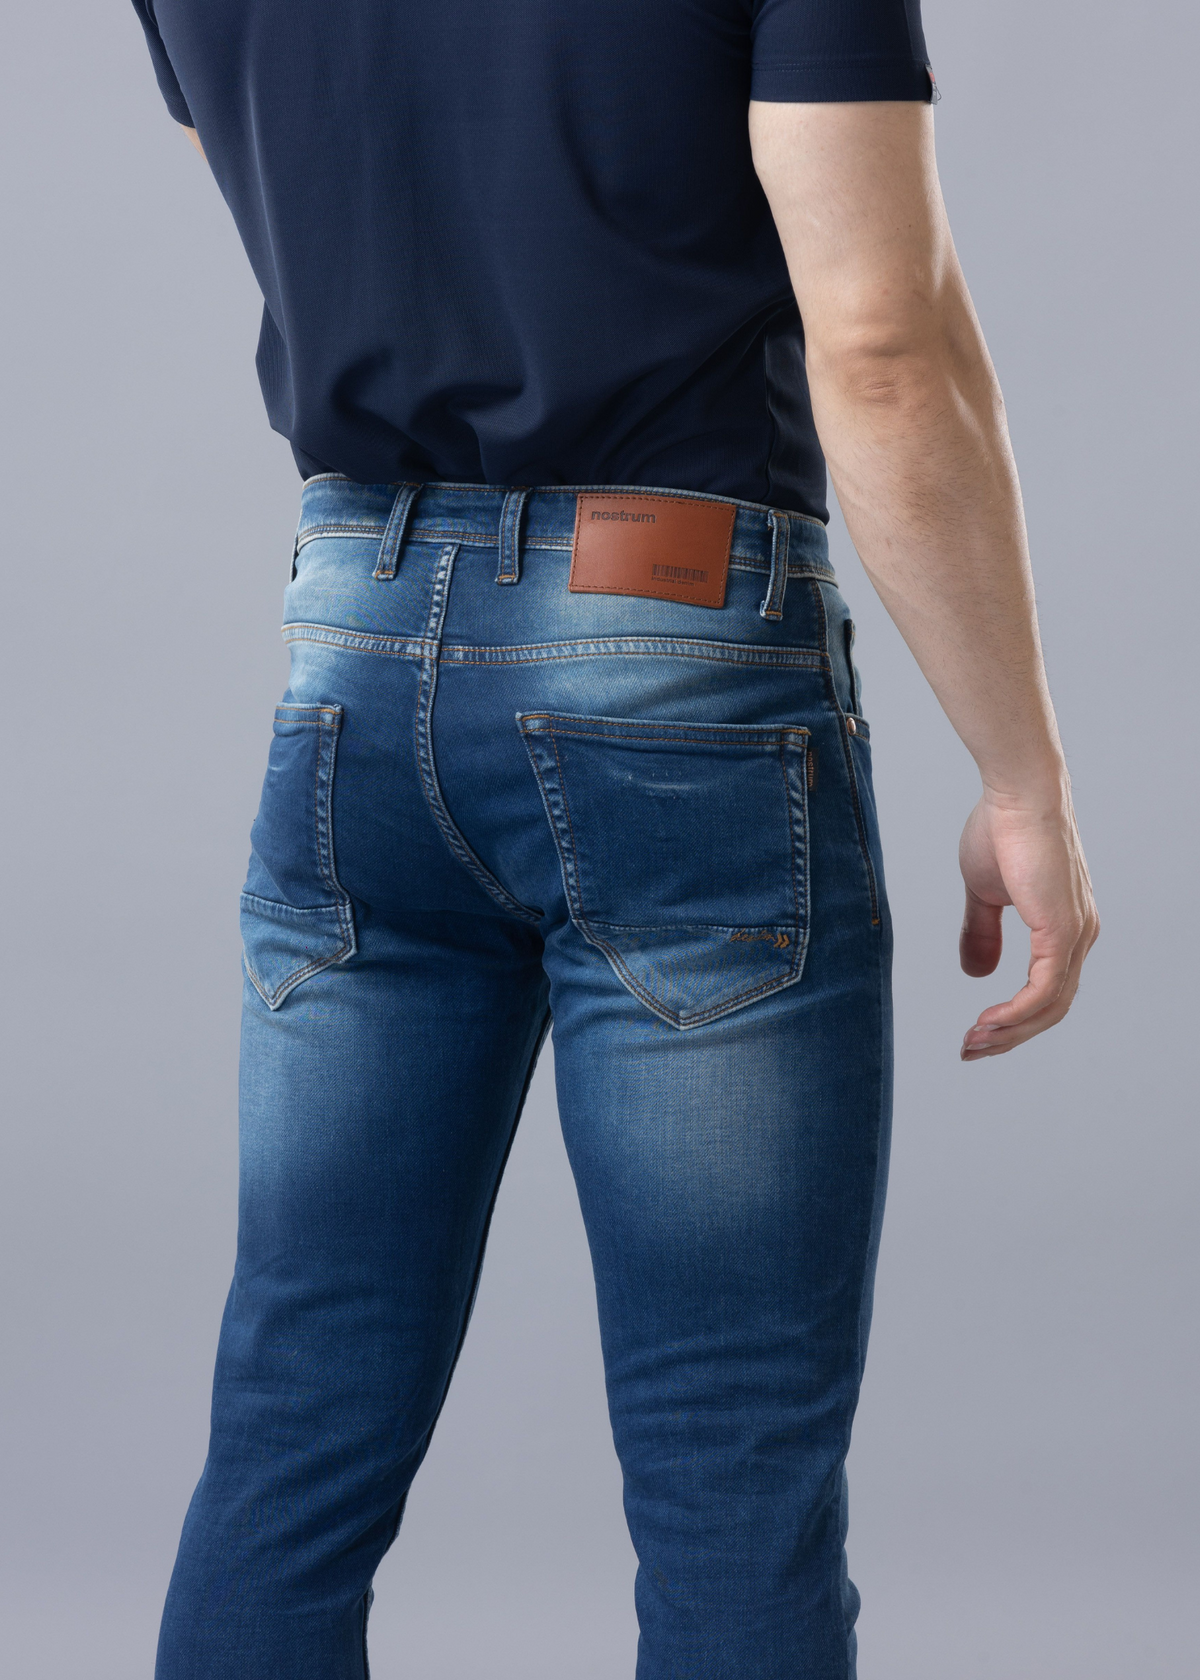 Darwin Slim Fit Blue Denim Jeans For Men - Nostrum Fashion